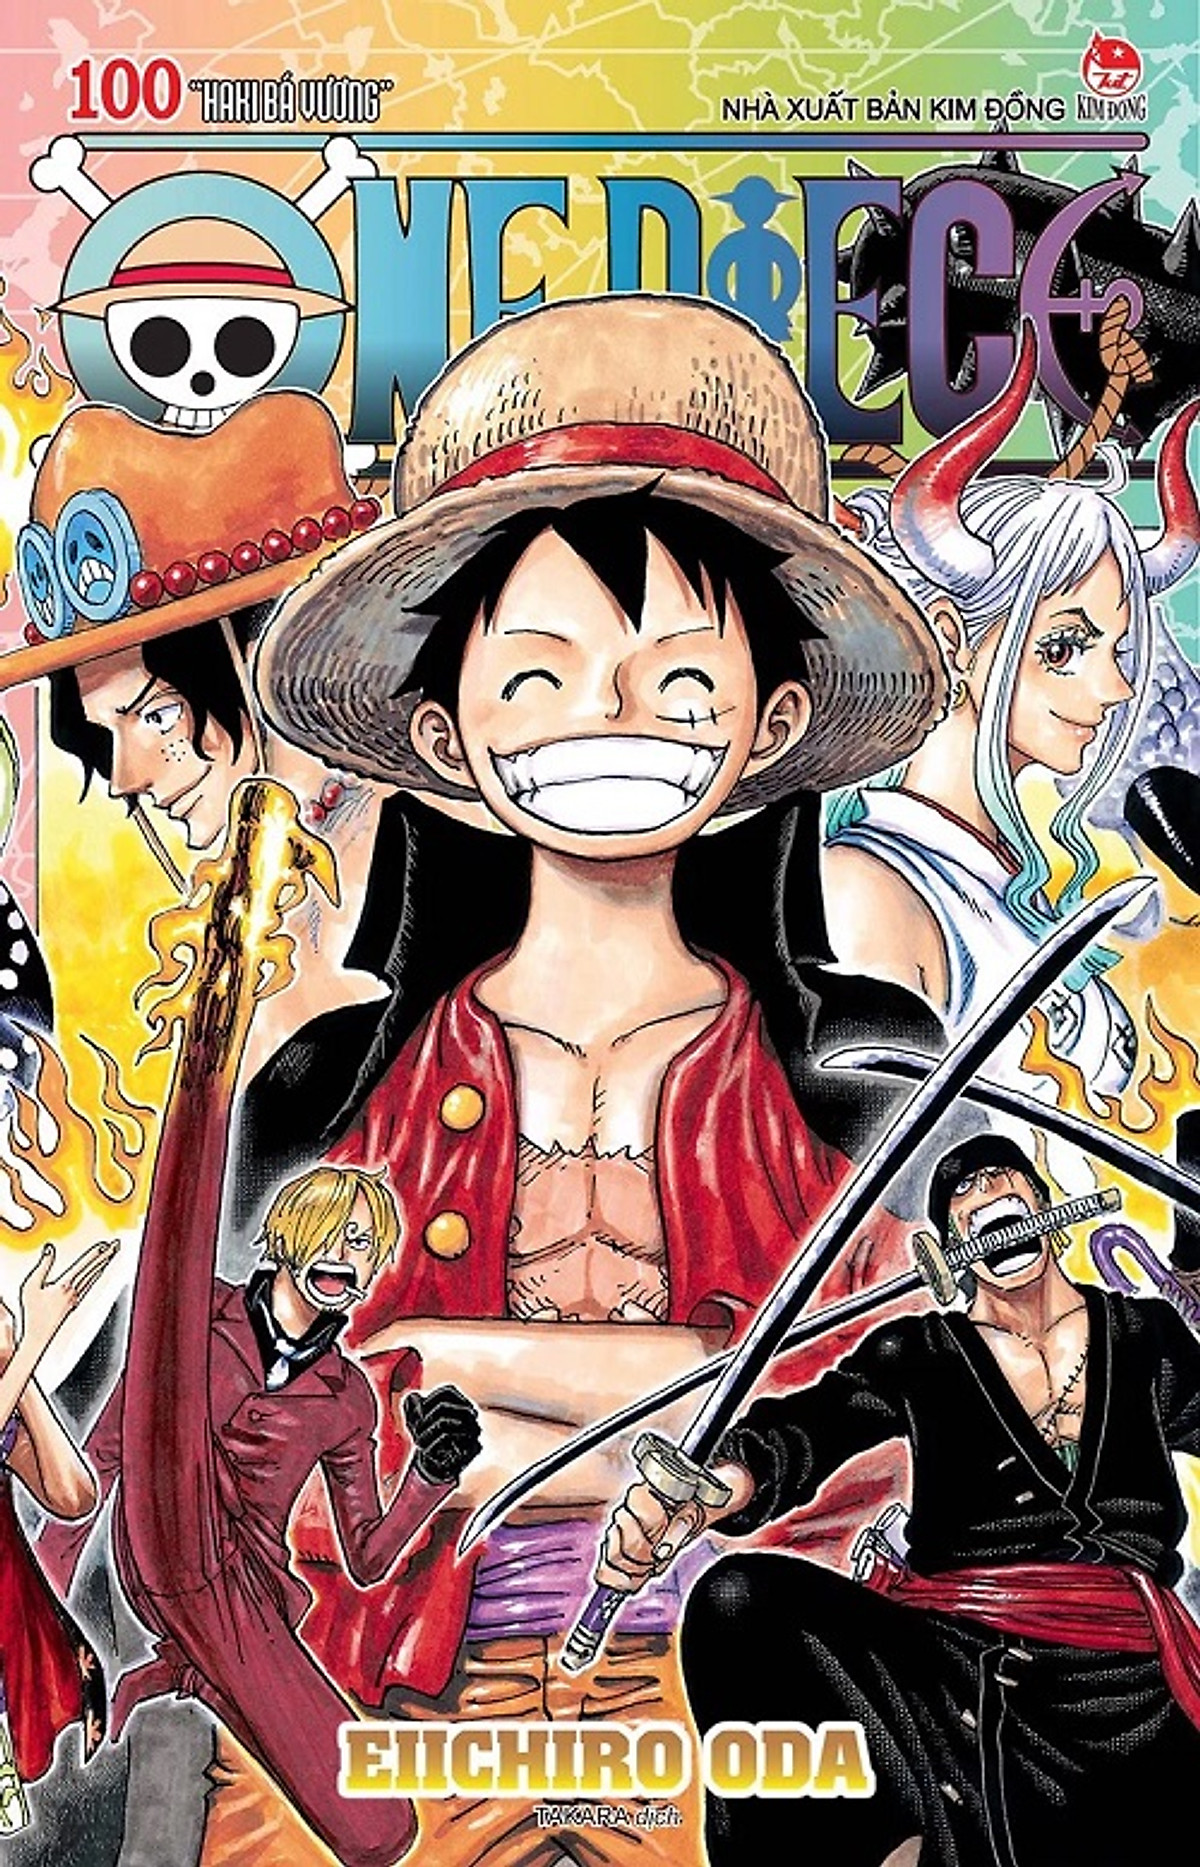 Xem hình ảnh về sách One Piece tập 100, được tái bản với nội dung đầy đủ và độc quyền. Bạn sẽ được chiêm ngưỡng bìa sách tuyệt đẹp và nhiều trang có hình ảnh chất lượng cao của những nhân vật đầy cá tính.